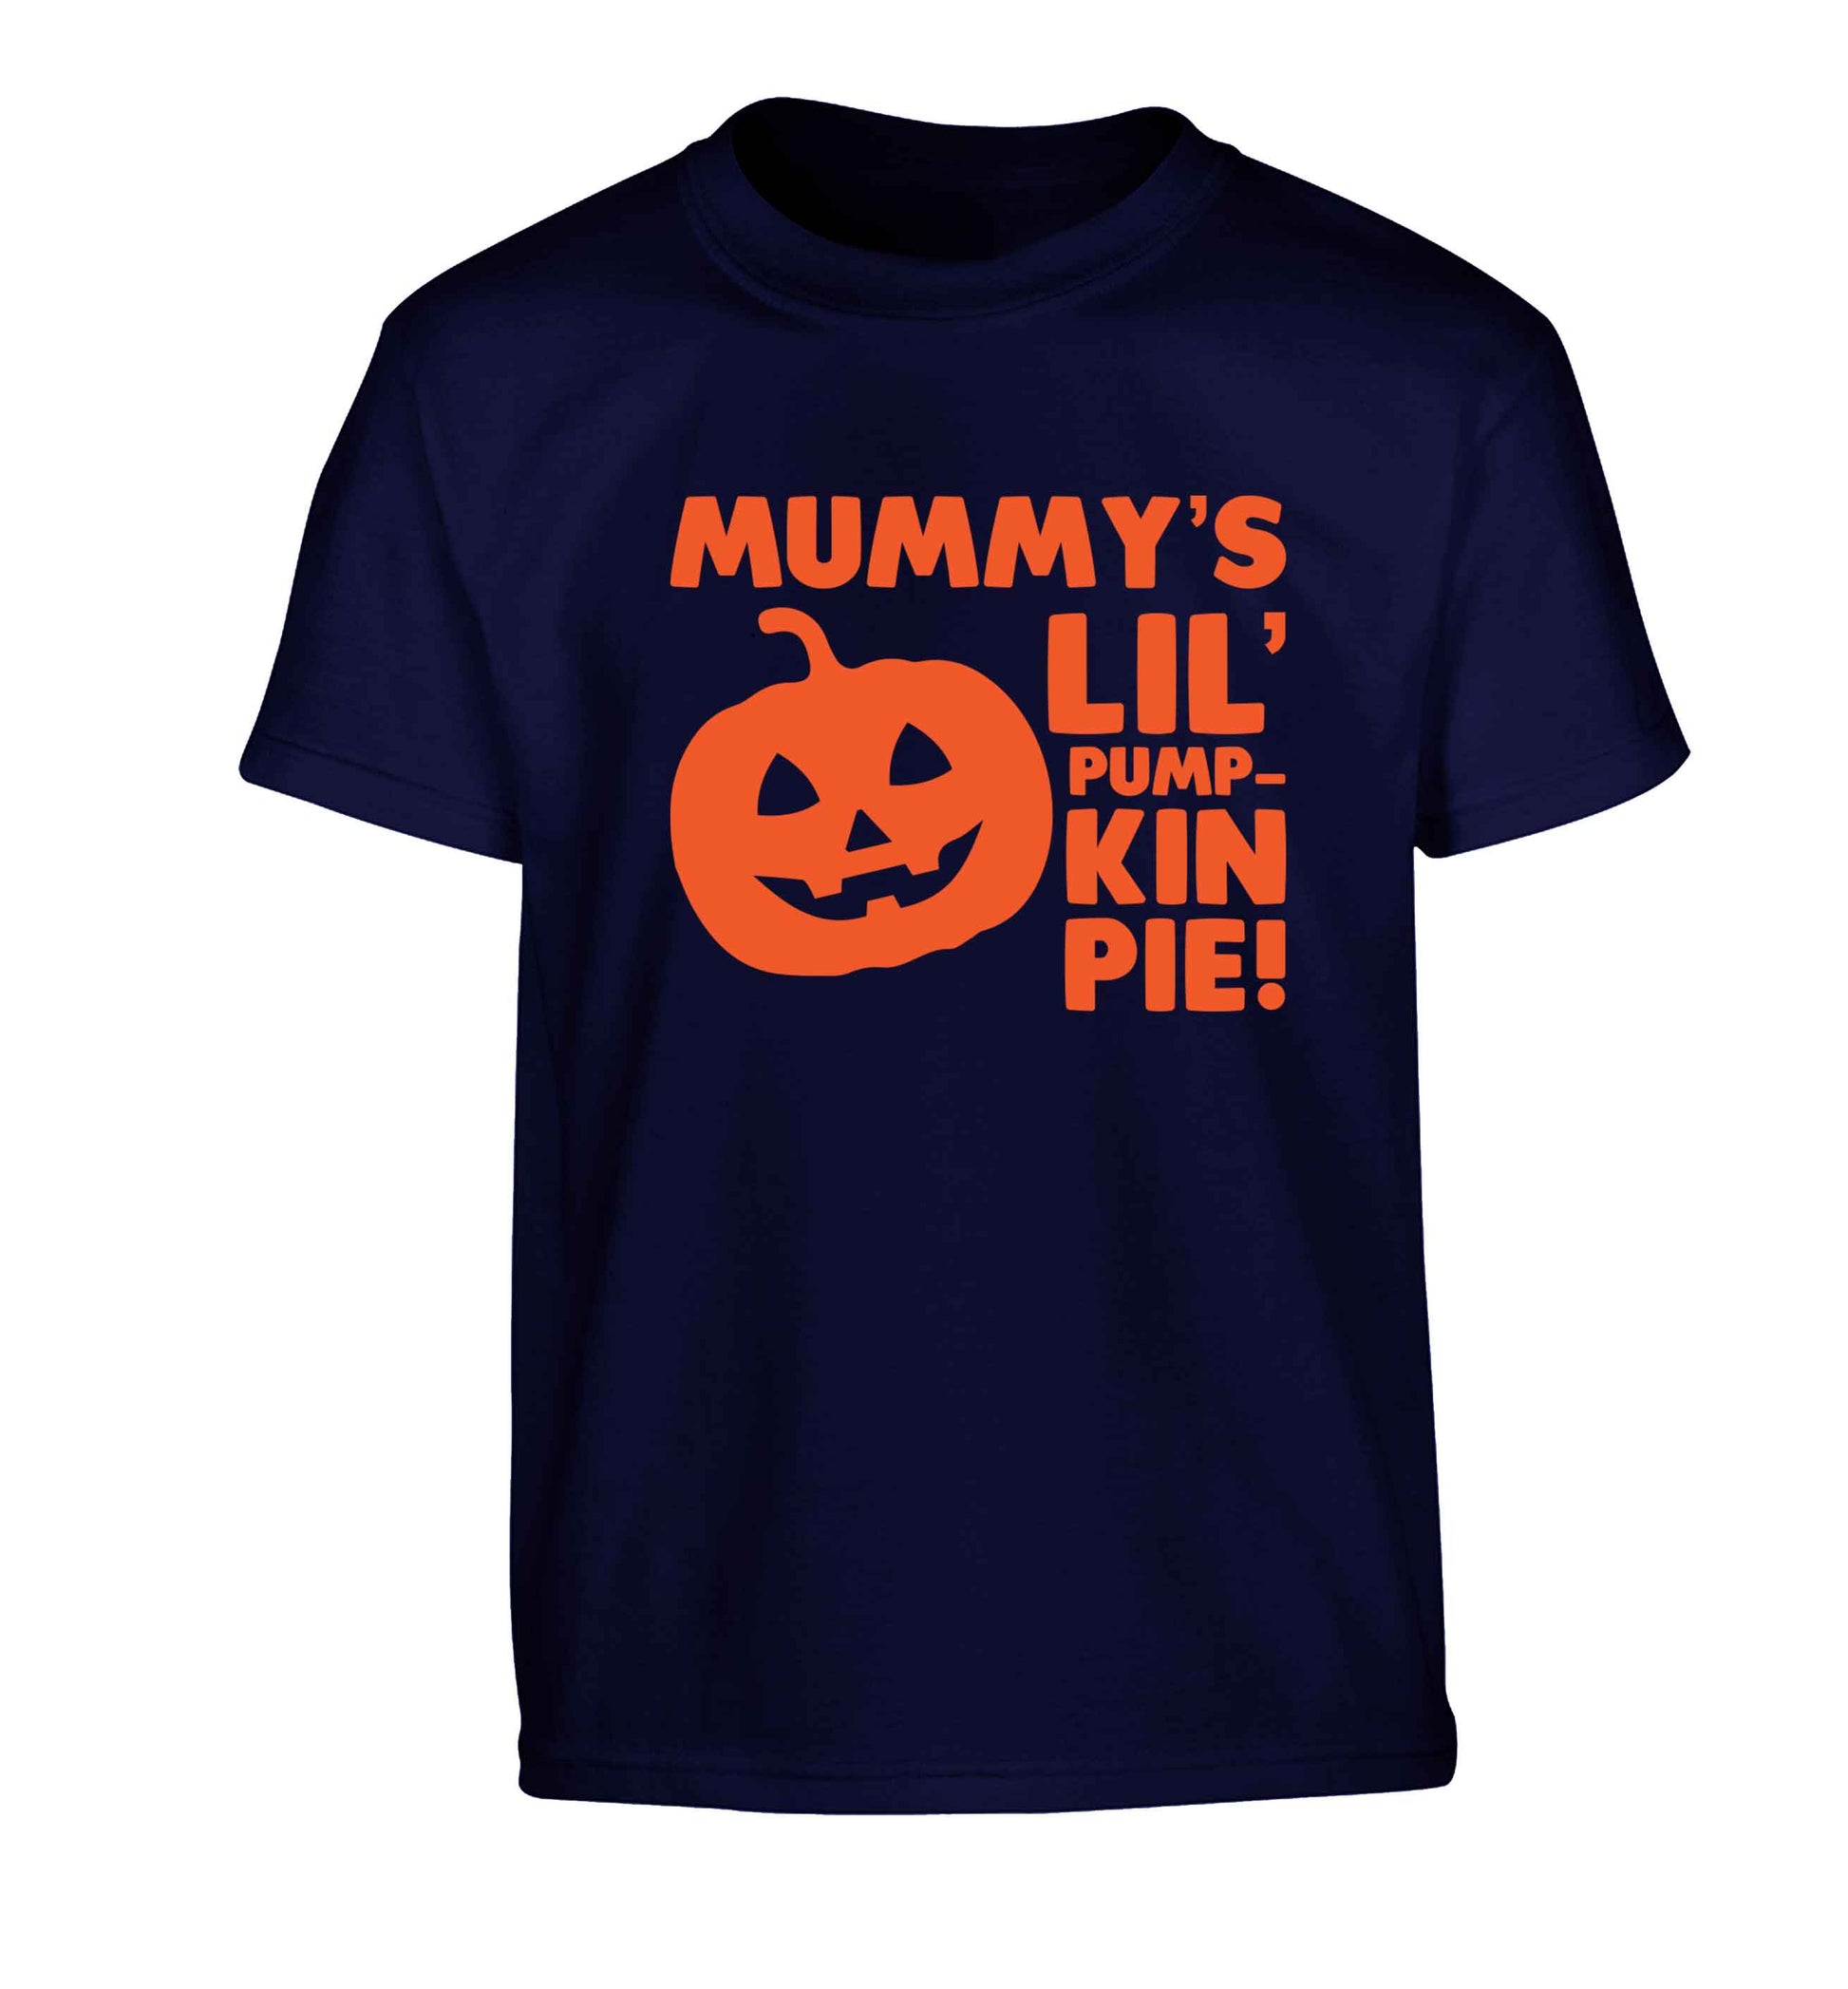 Mummy's lil' pumpkin pie Children's navy Tshirt 12-13 Years